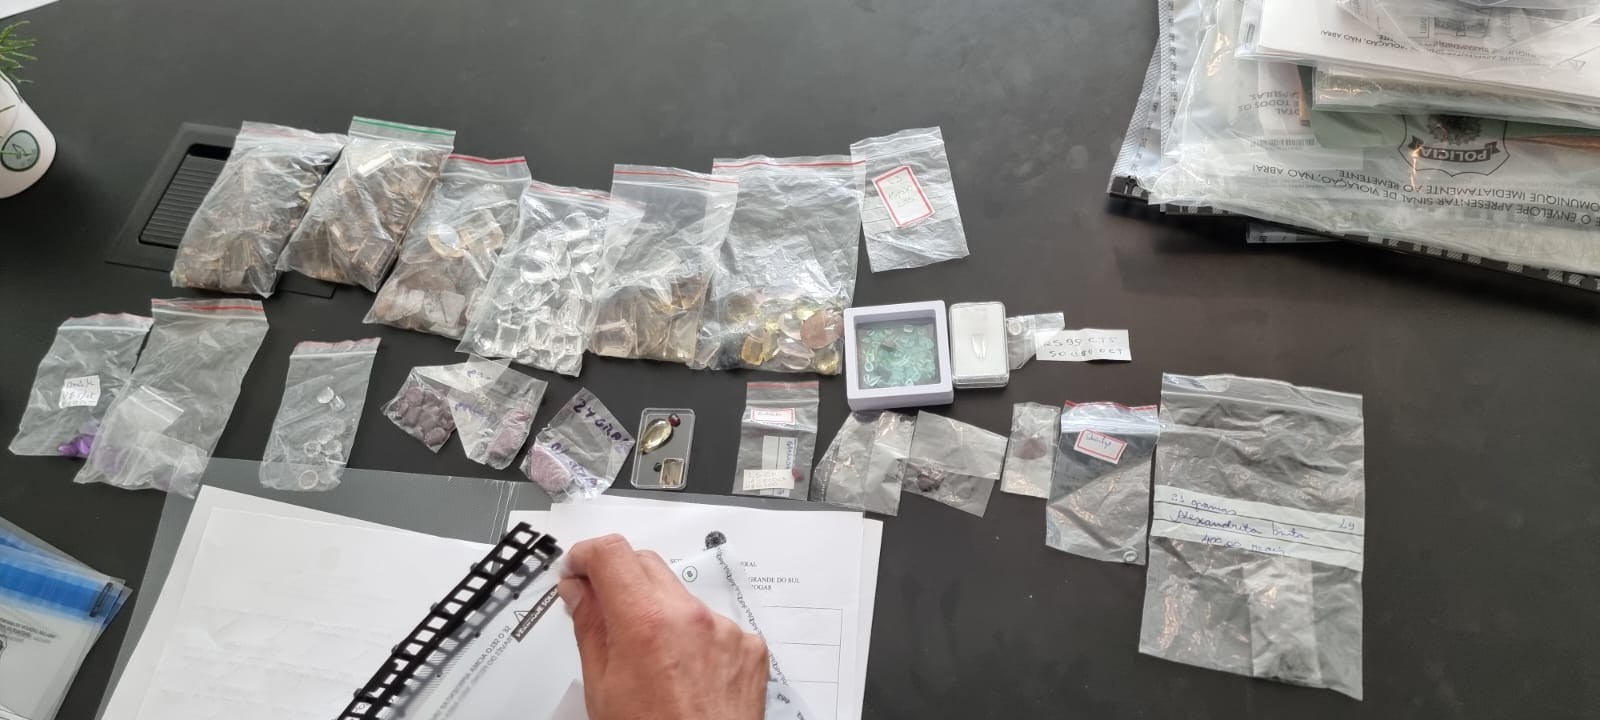 Pedras preciosas apreendidas pela PF em operação contra o tráfico internacional de drogas — Foto: Divulgação/PF